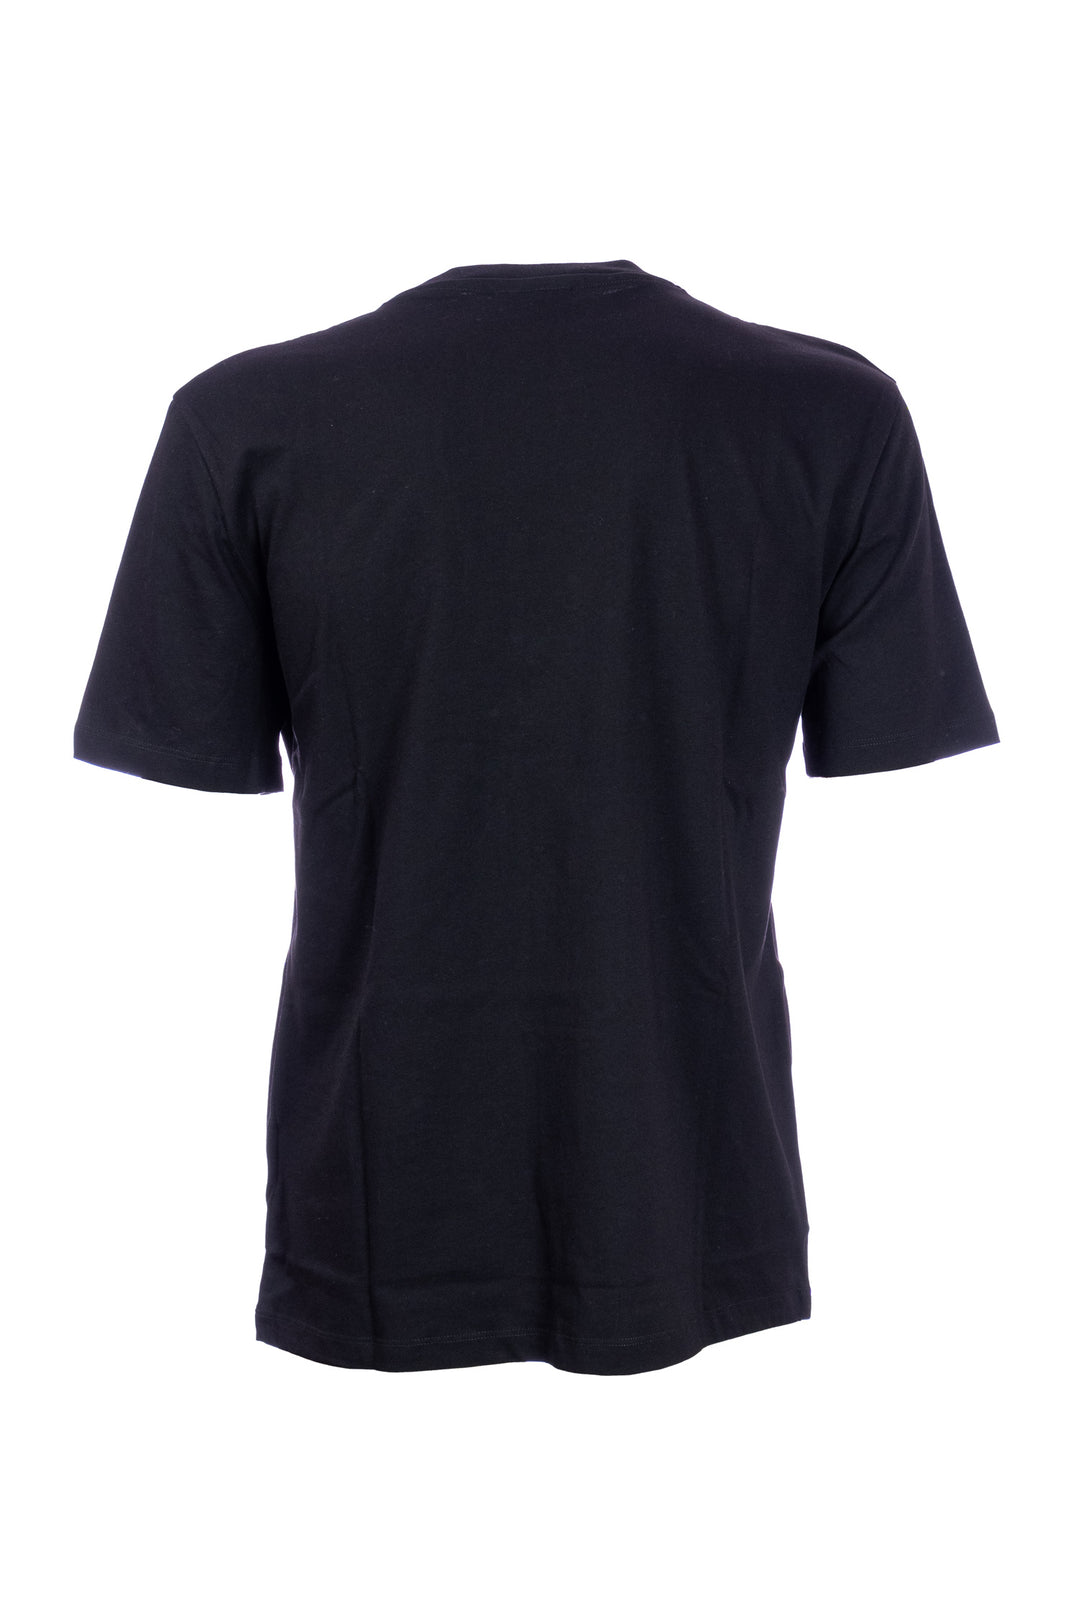 GAELLE T-shirt nera in cotone con stampa logo sfocato - Mancinelli 1954